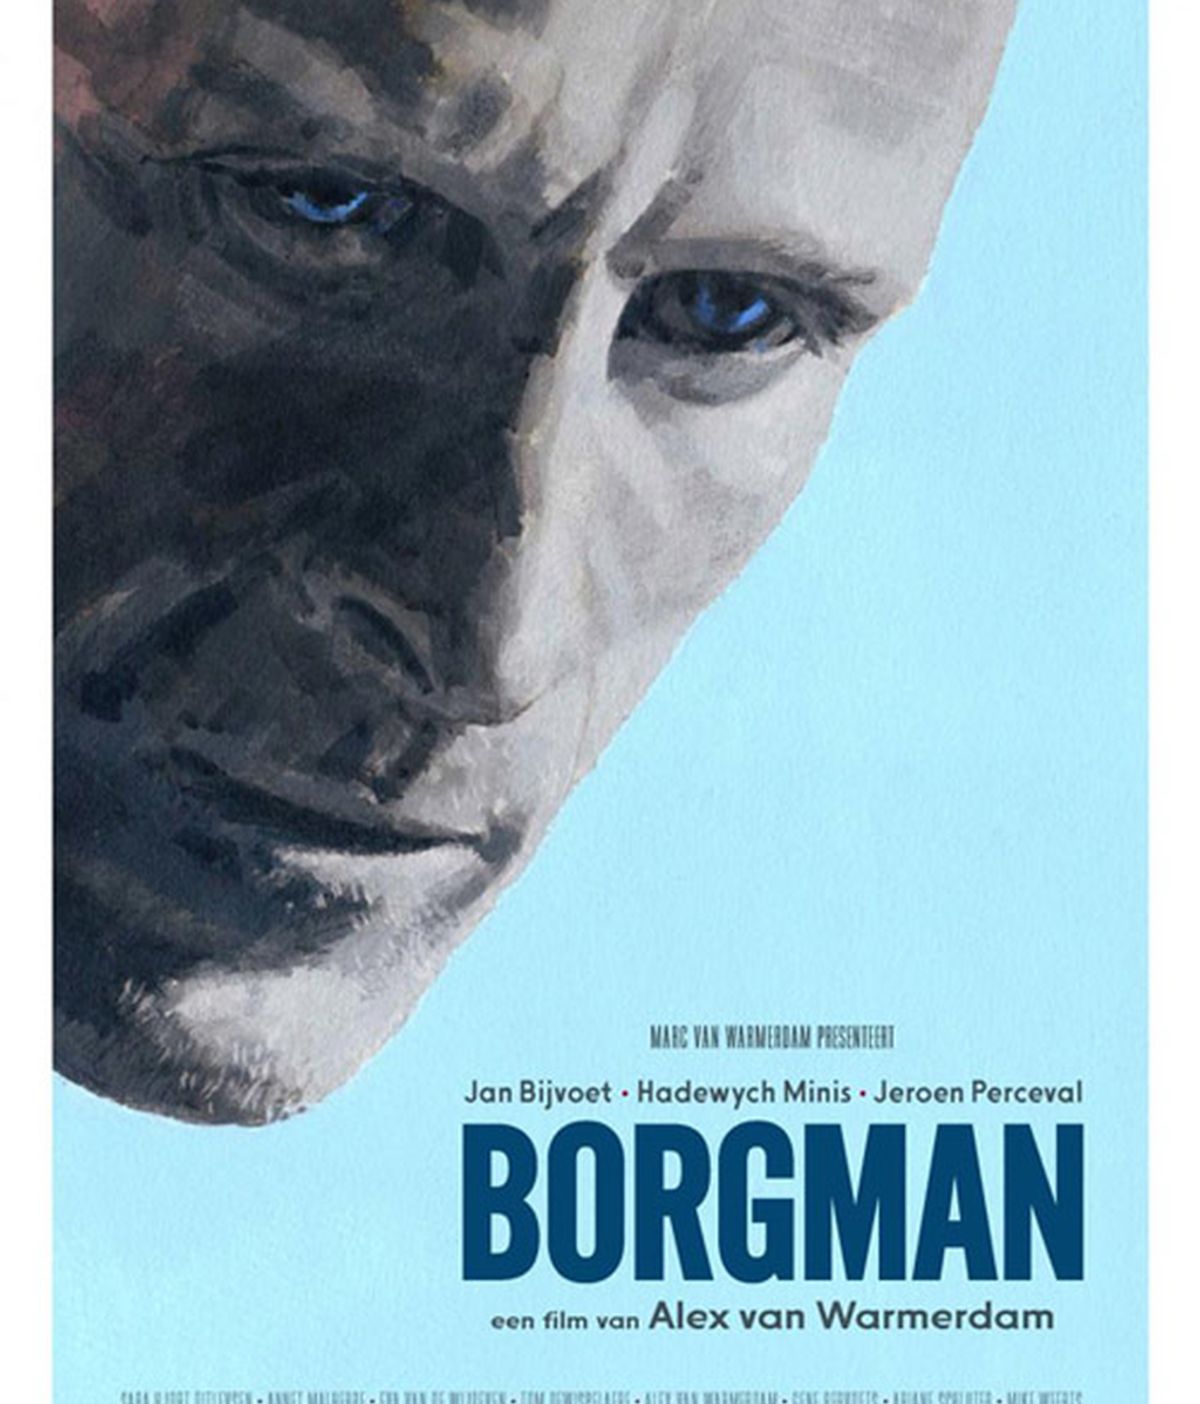 La película 'Borgman' se alza con el Palmarés a la mejor película en el Festival de Sitges